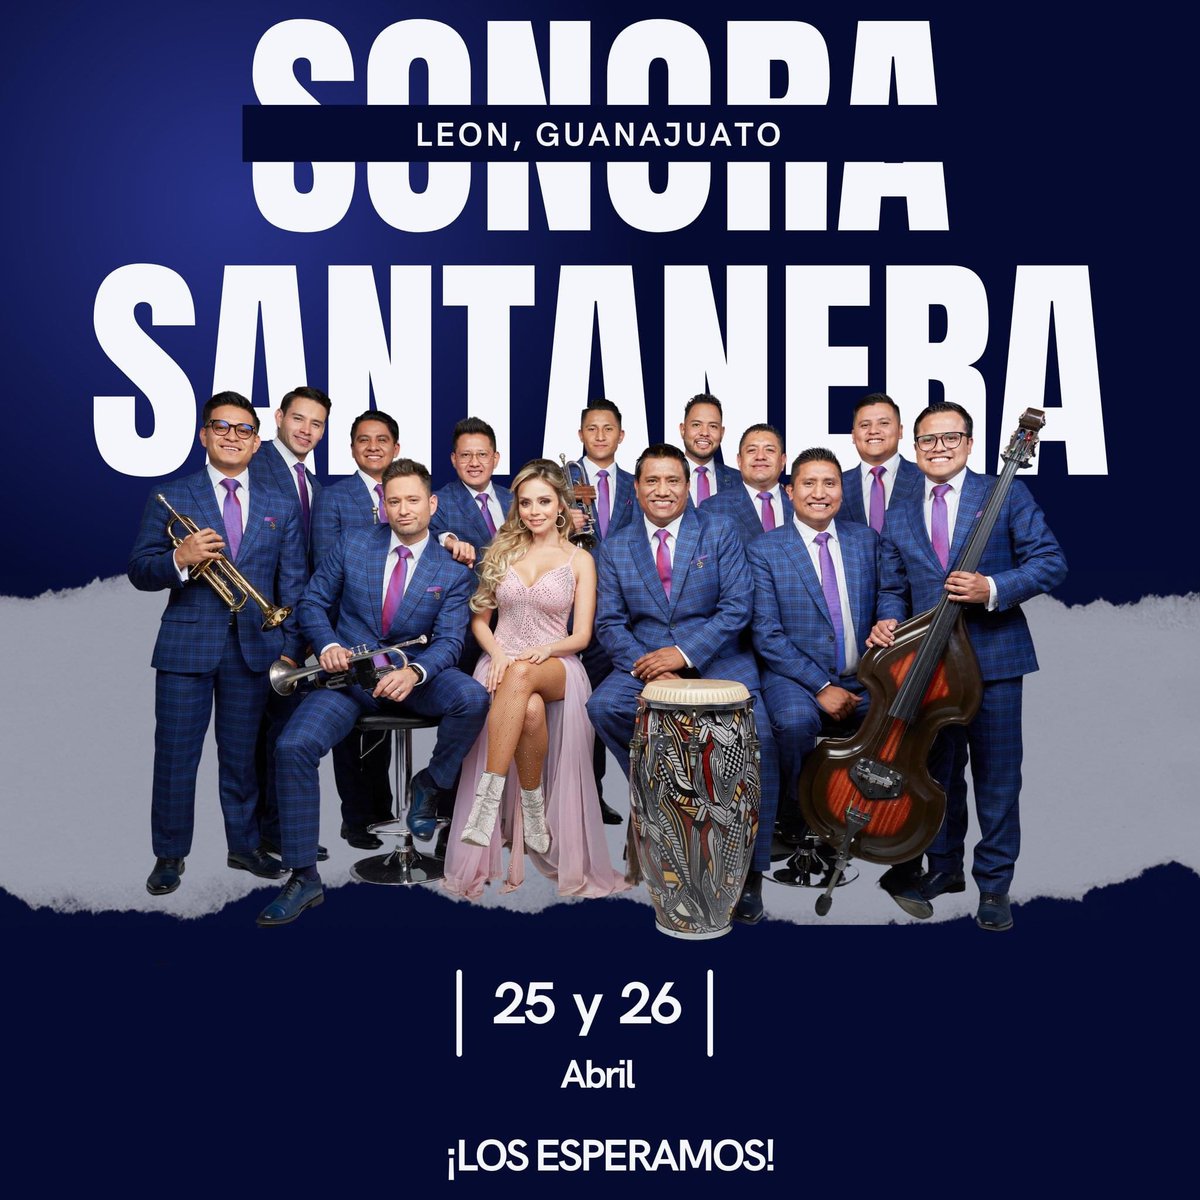 ¡Buenos días! hoy la @s_santanera con @Mariferg6 se presentan León, Guanajuato! 💃🕺🎶 

#ShowMedia #SonoraSantanera #mariferalvo #LeonGto #Guanajuato #leonguanajuato #conciertoenvivo